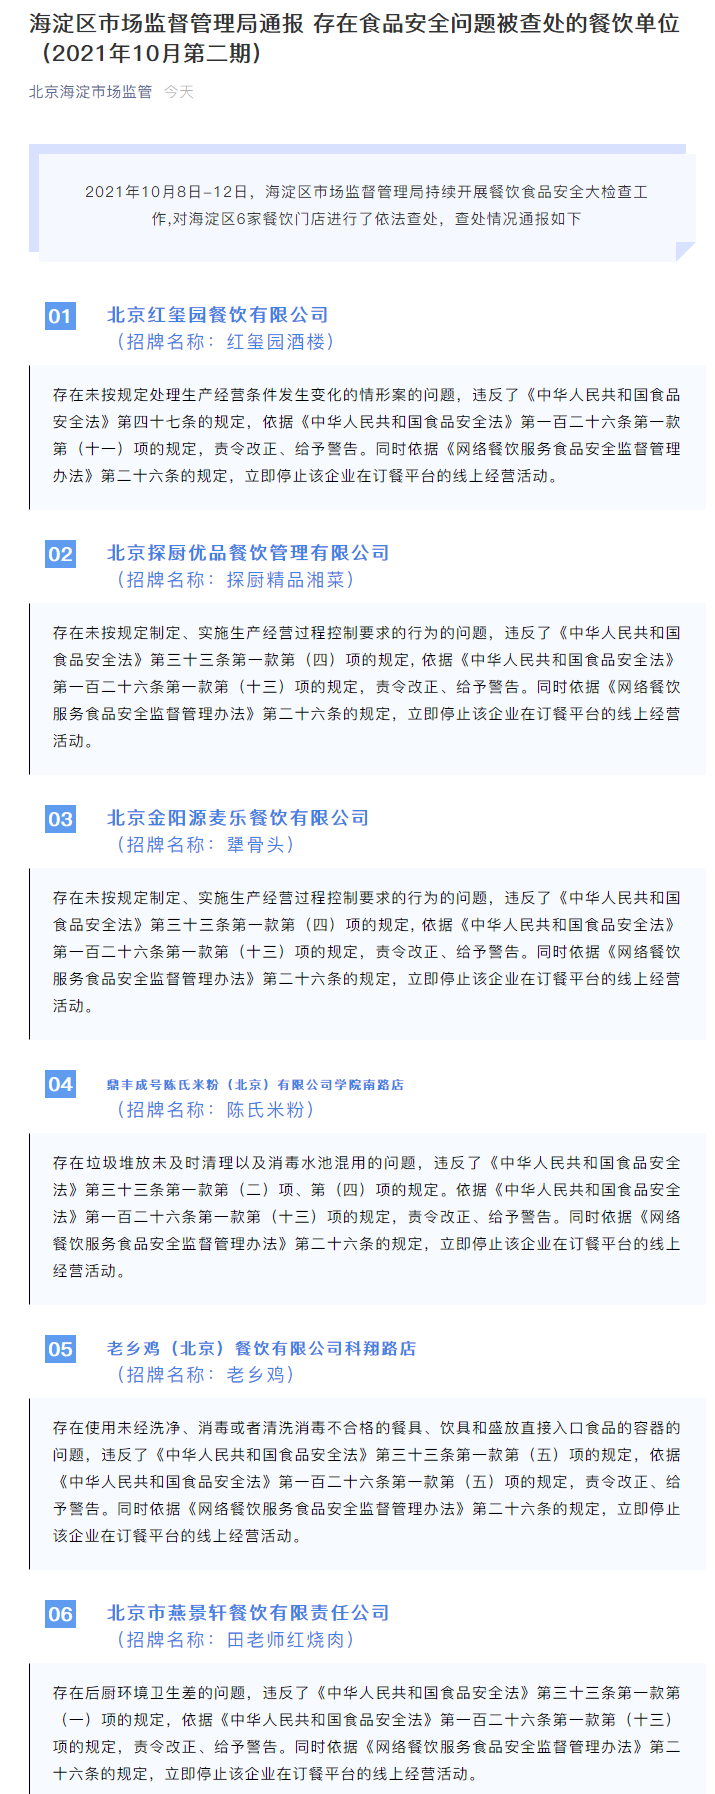 北京海淀通报新一批“问题餐饮店” 犟骨头、老乡鸡等上榜